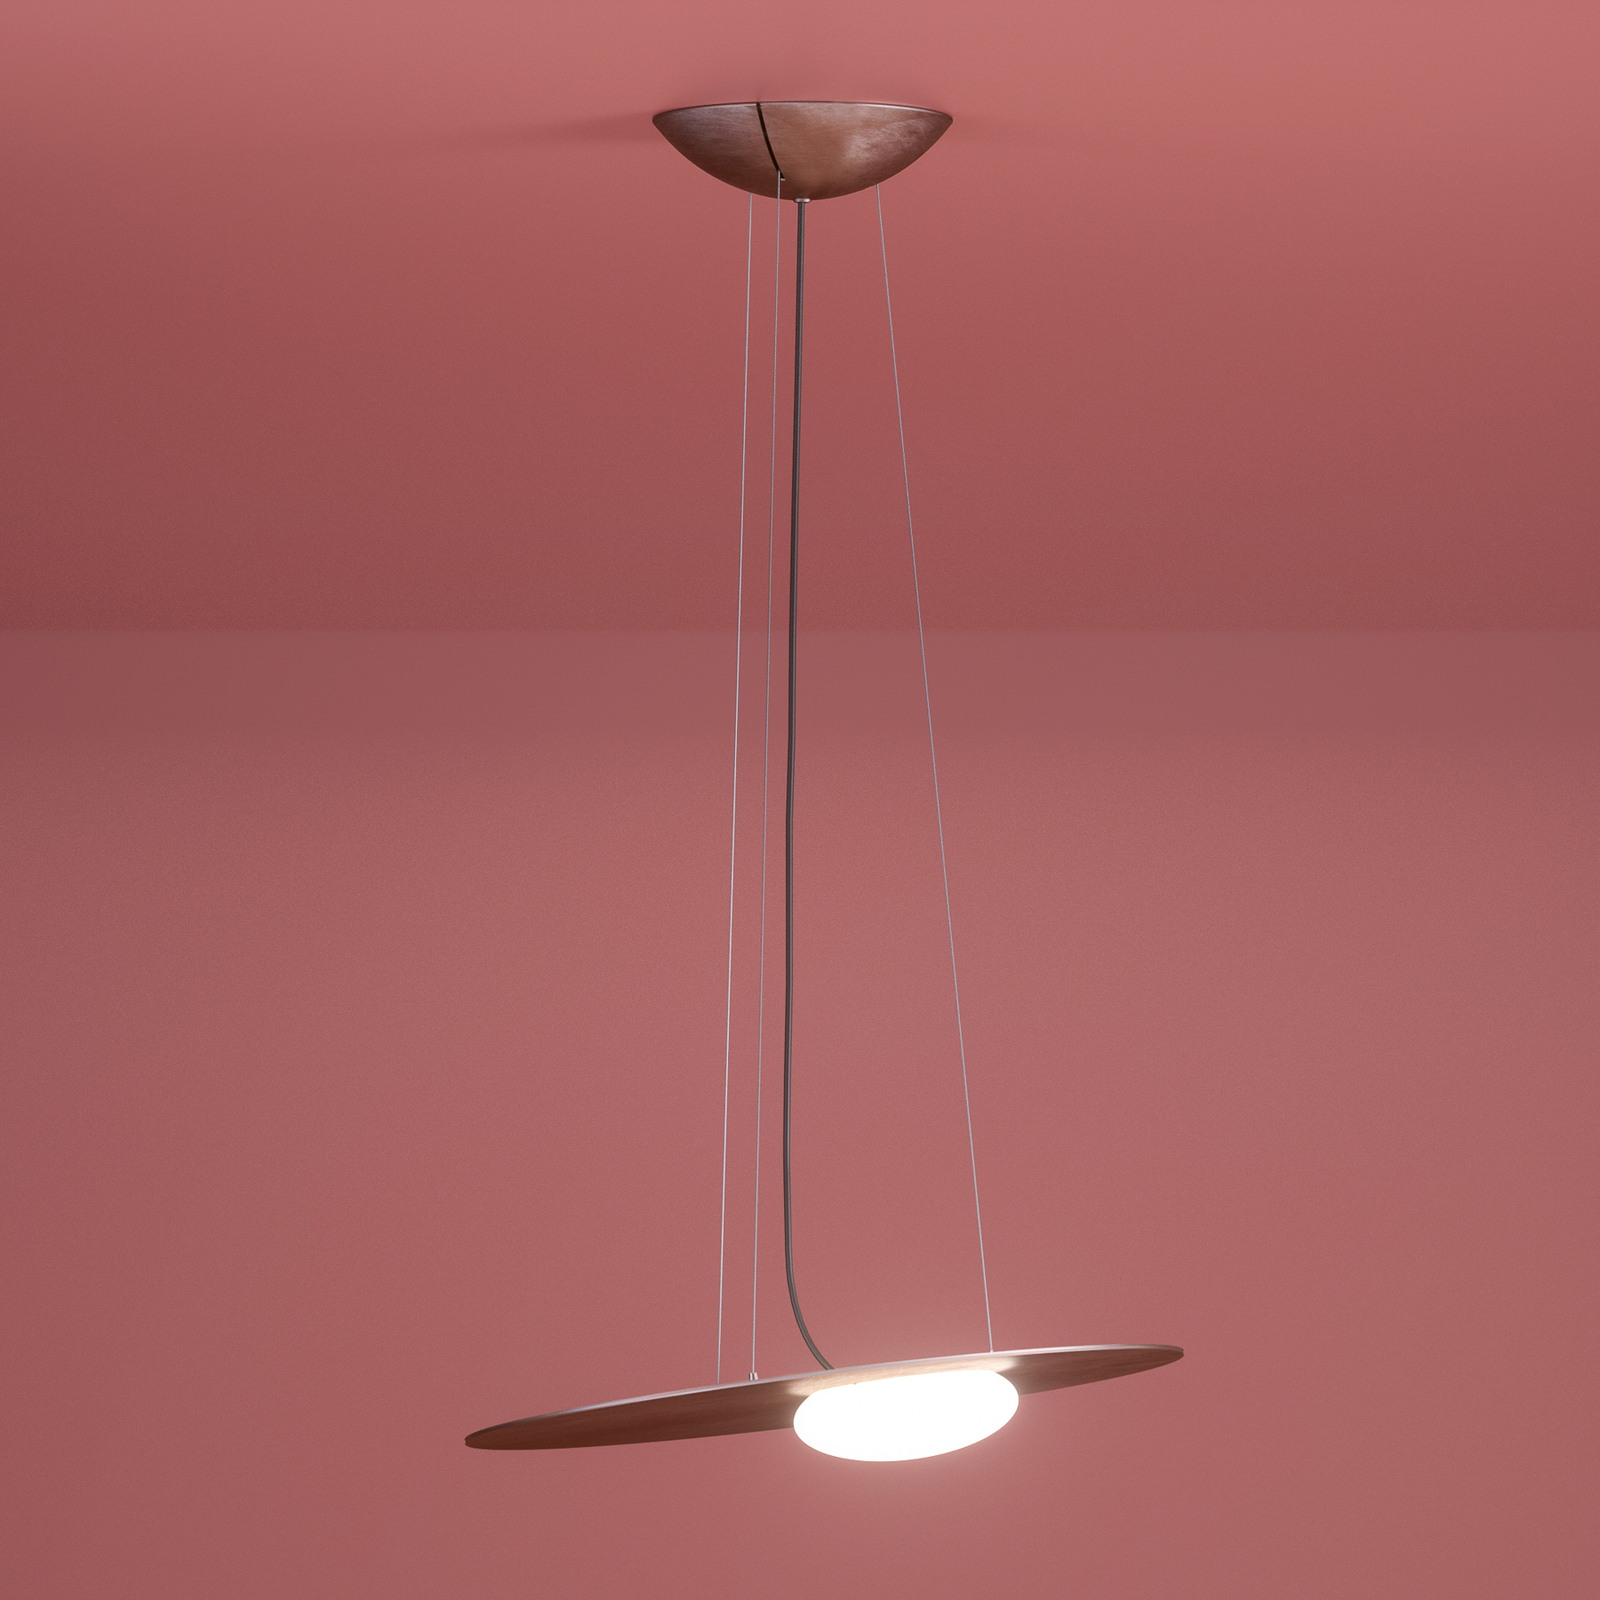 Axolight Kwic hanglamp, brons 48cm